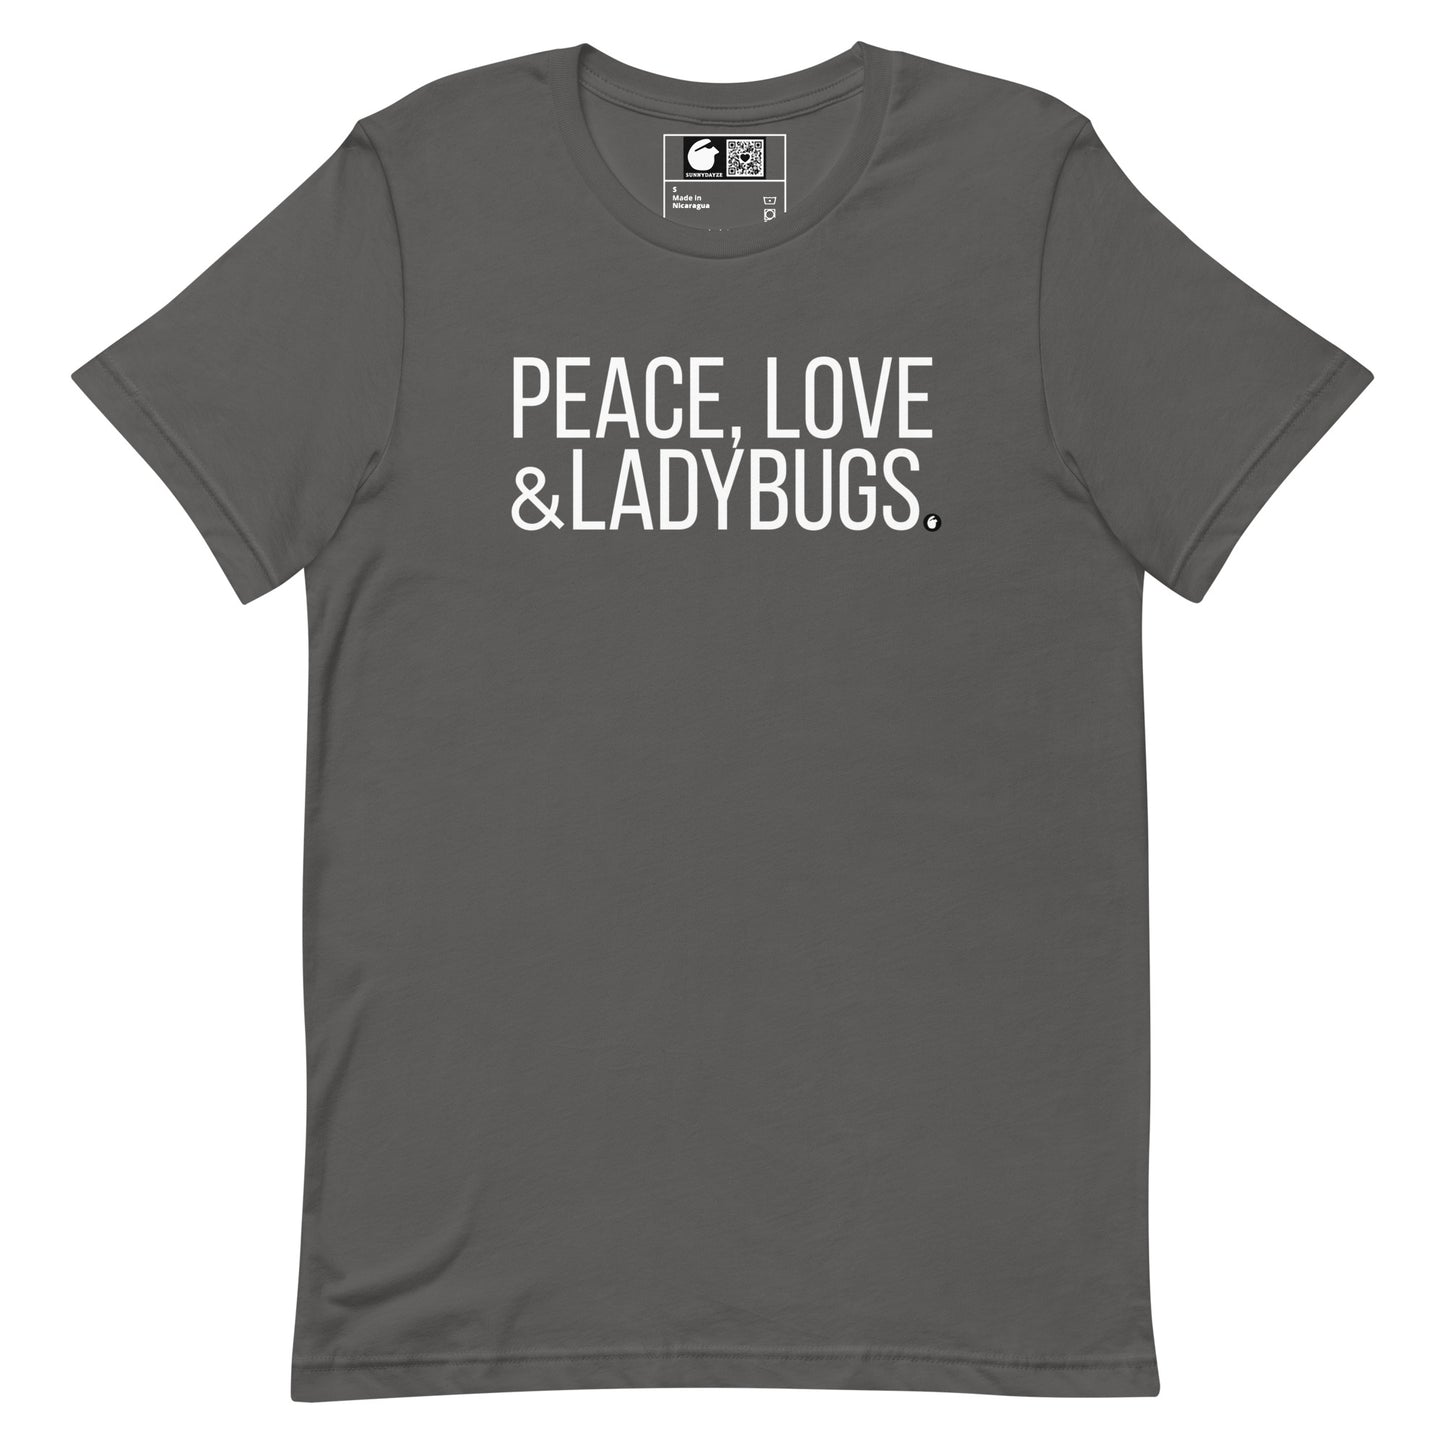 LADYBUGS Short-Sleeve Unisex t-shirt